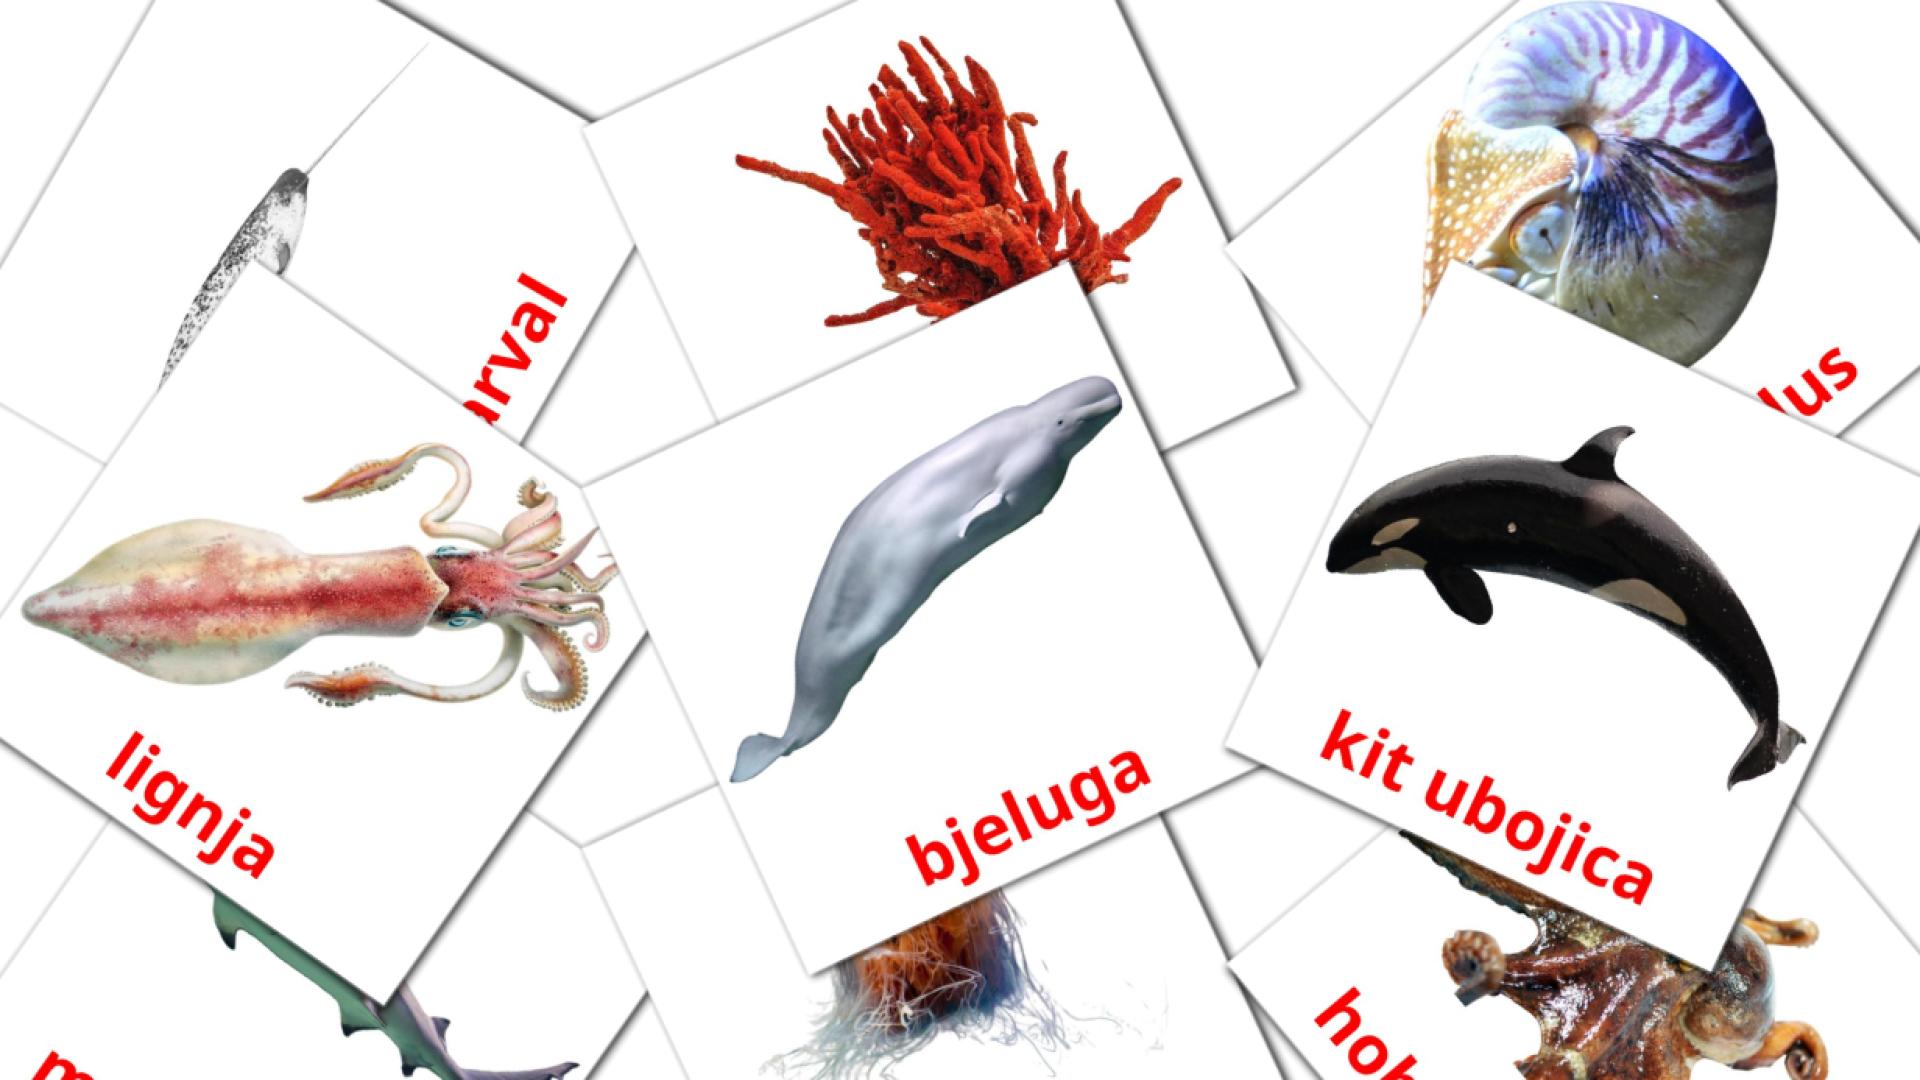 29 Imagiers Morske životinje